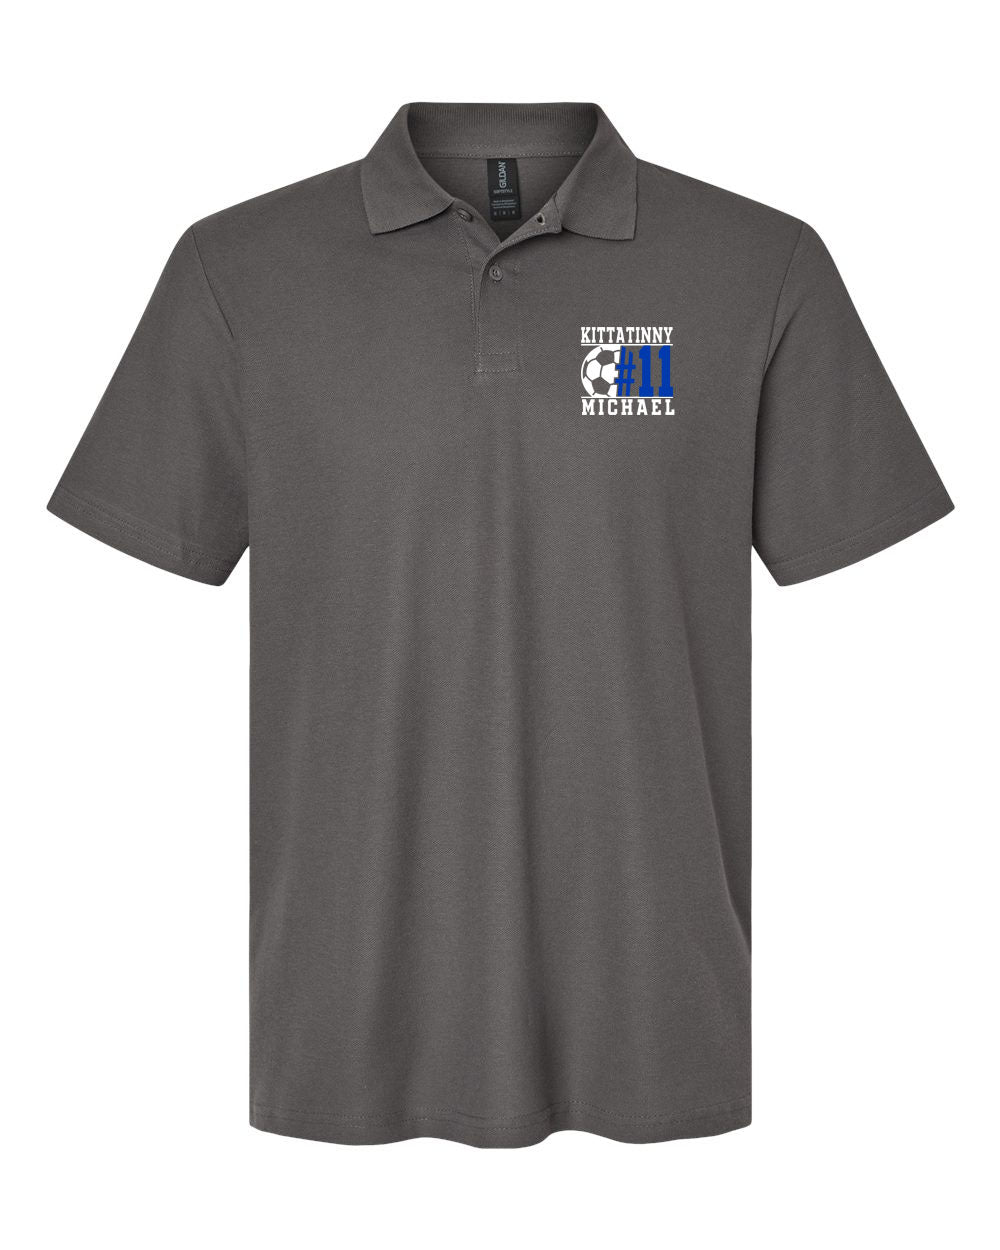 Kittatinny Soccer Design 5 Polo T-Shirt